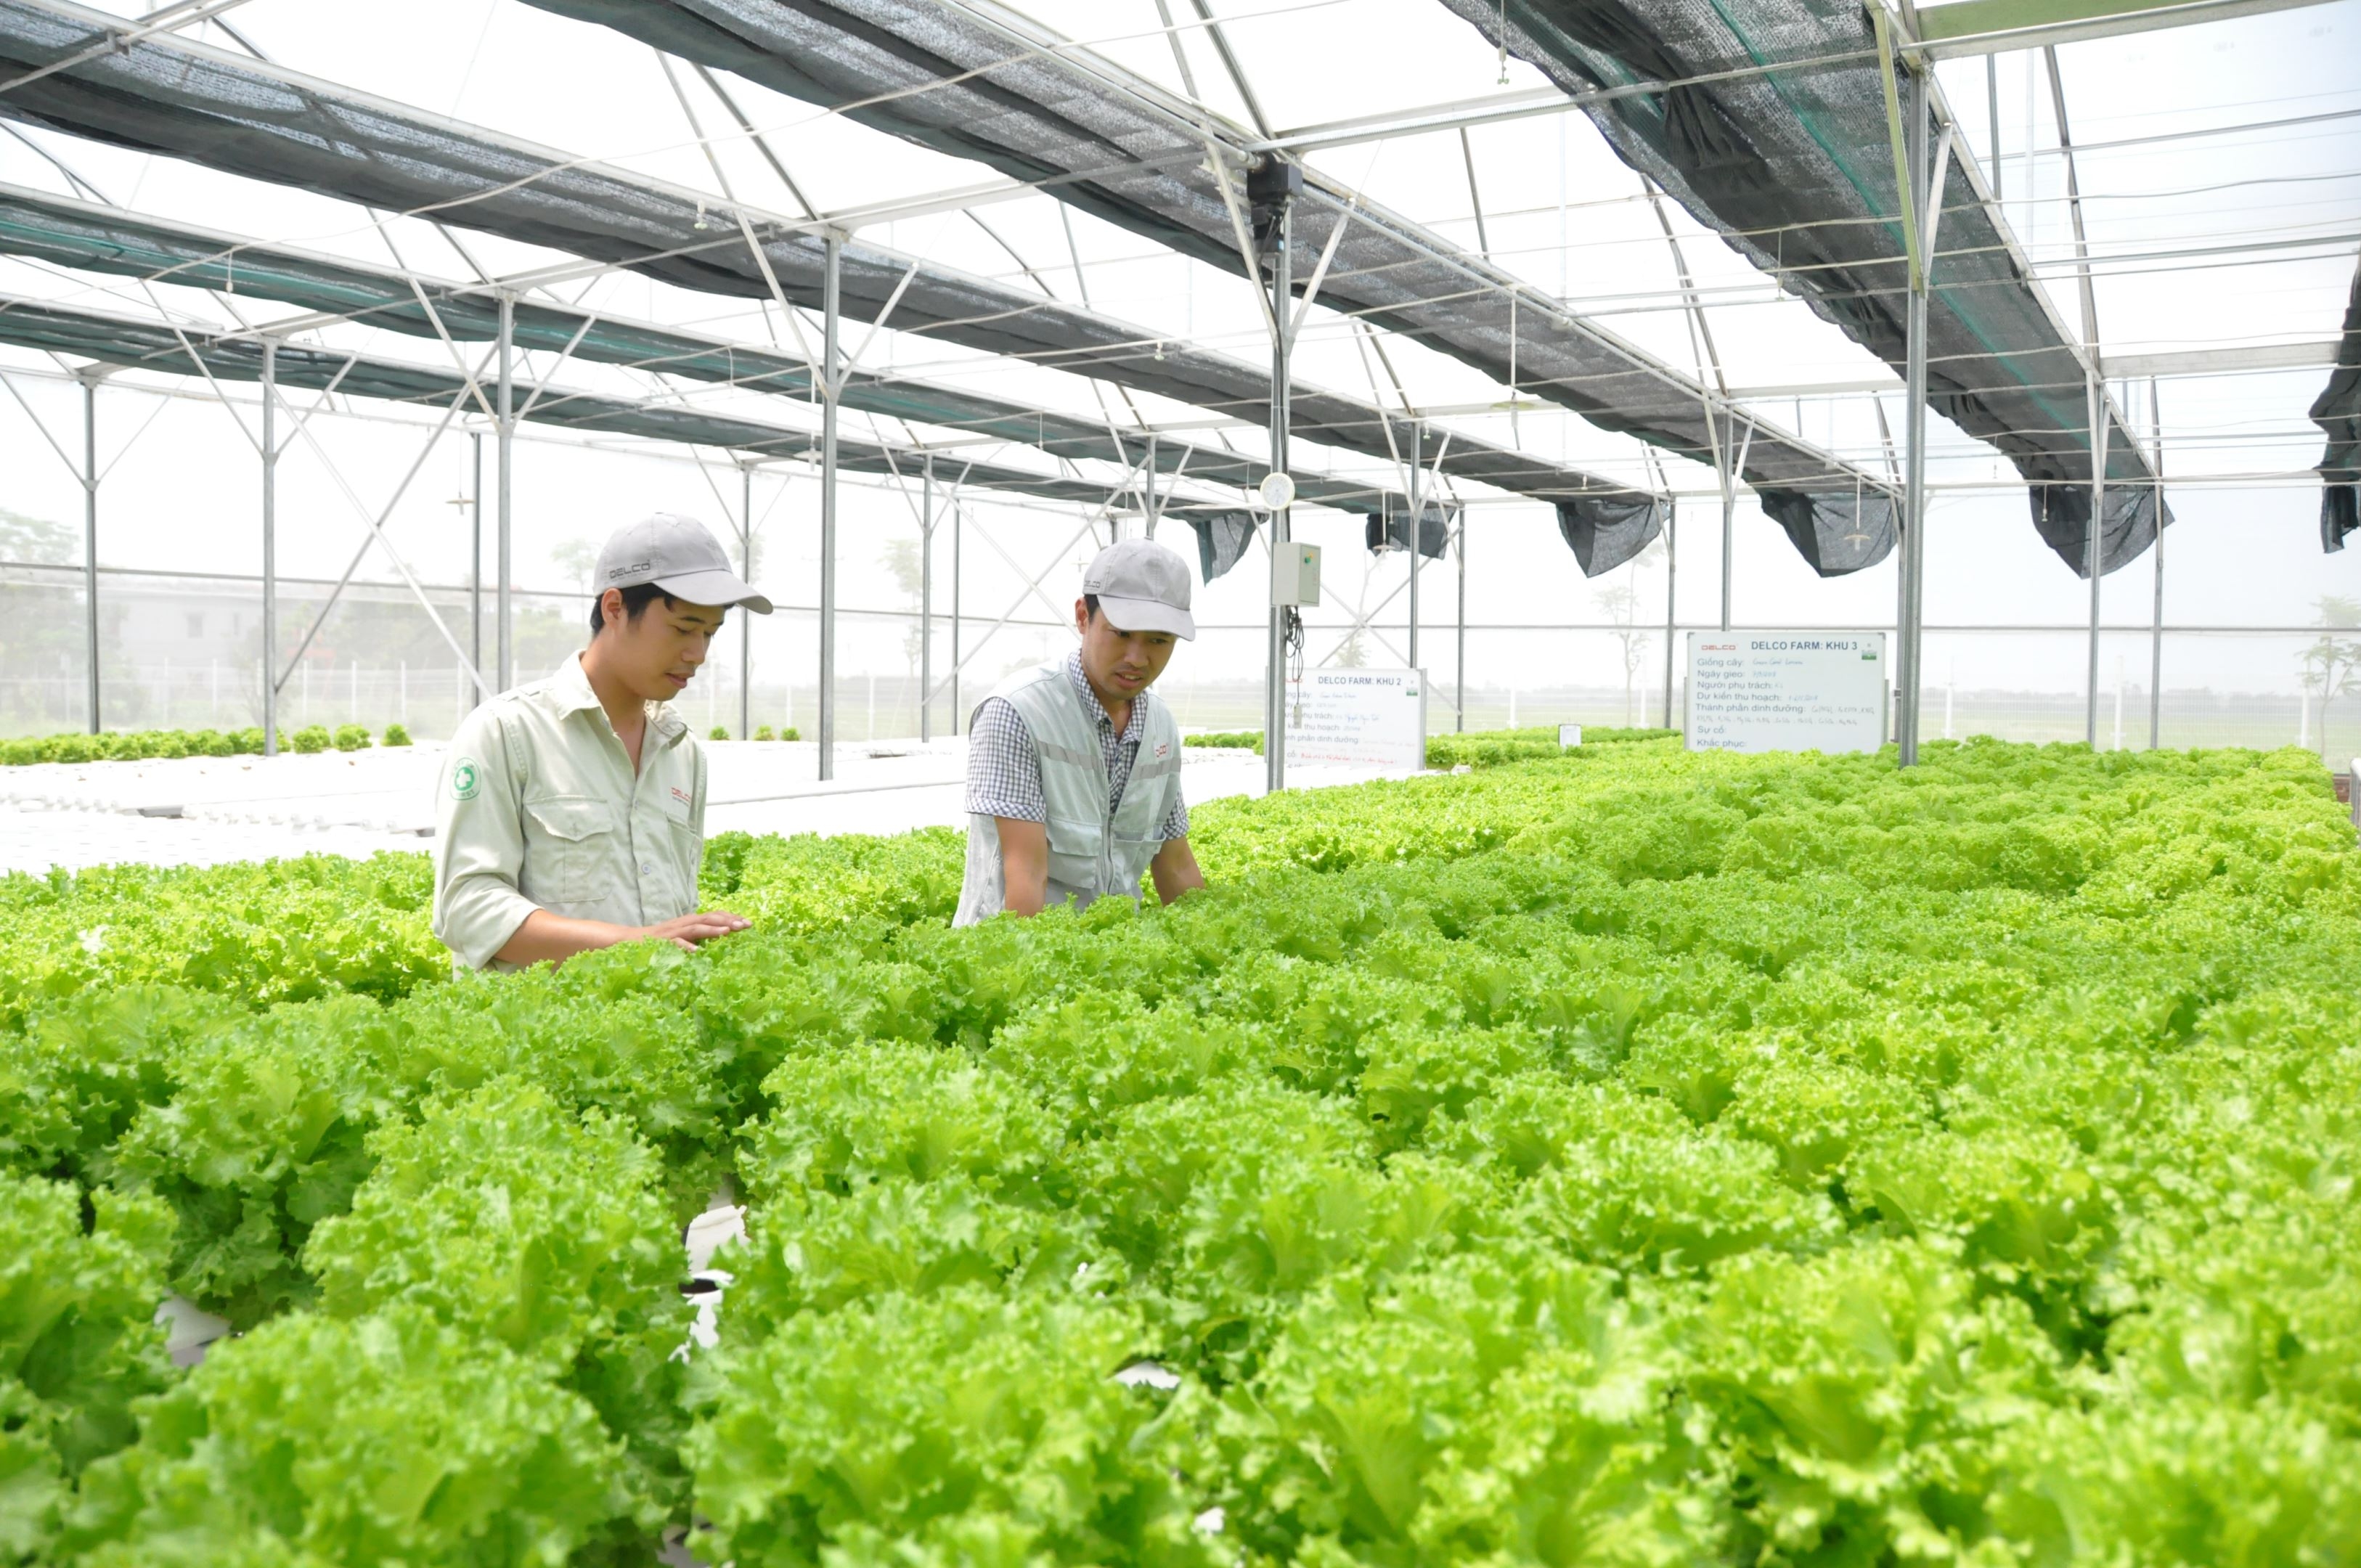 澳大利亚和越南在发展高科技农业方面有许多合作机会